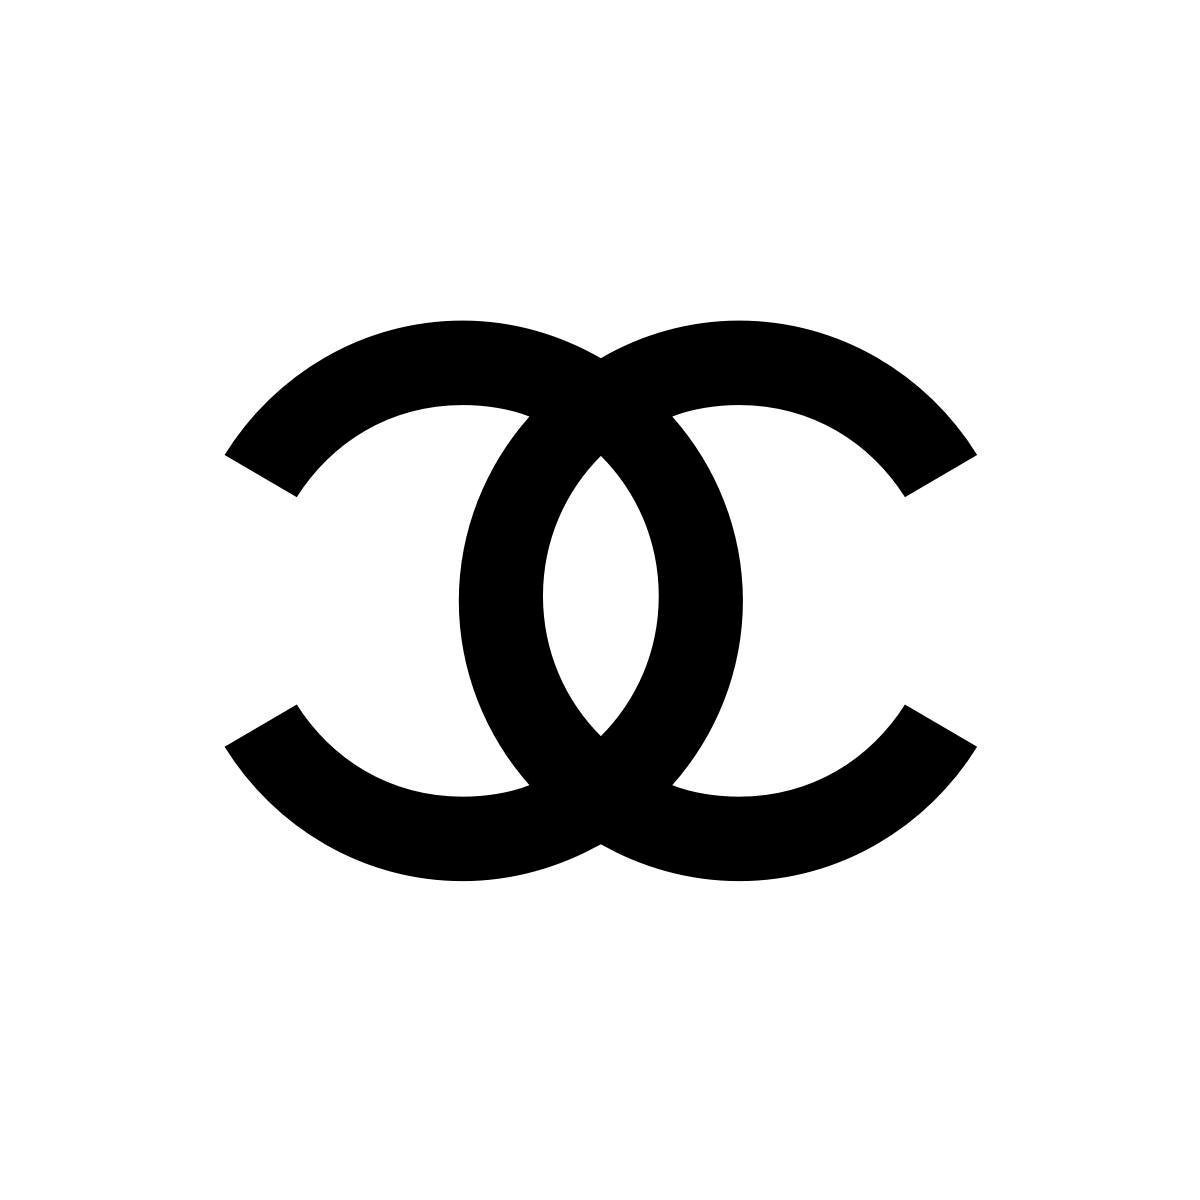 CHANEL BOUTIQUE DÜSSELDORF in Düsseldorf - Logo